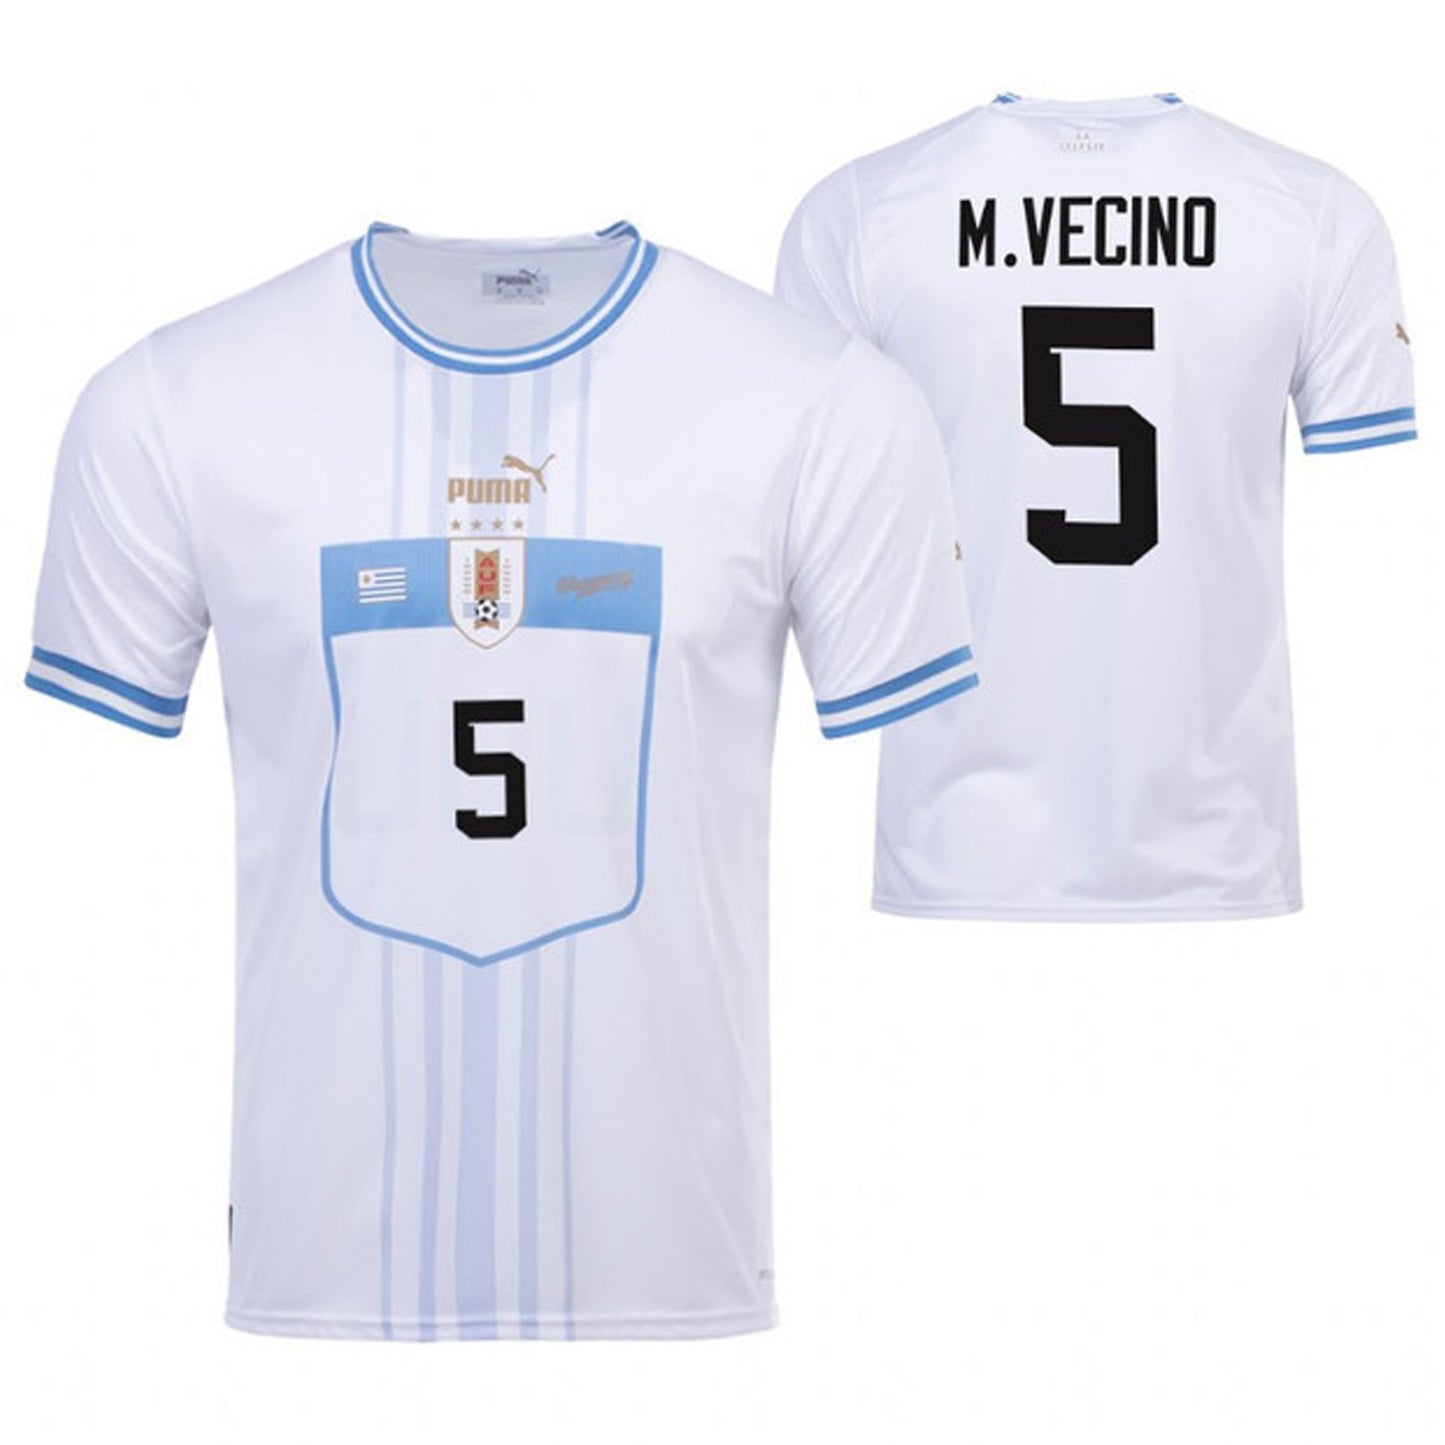 Matias Vecino Uruguay 5 Fifa World Cup Jersey